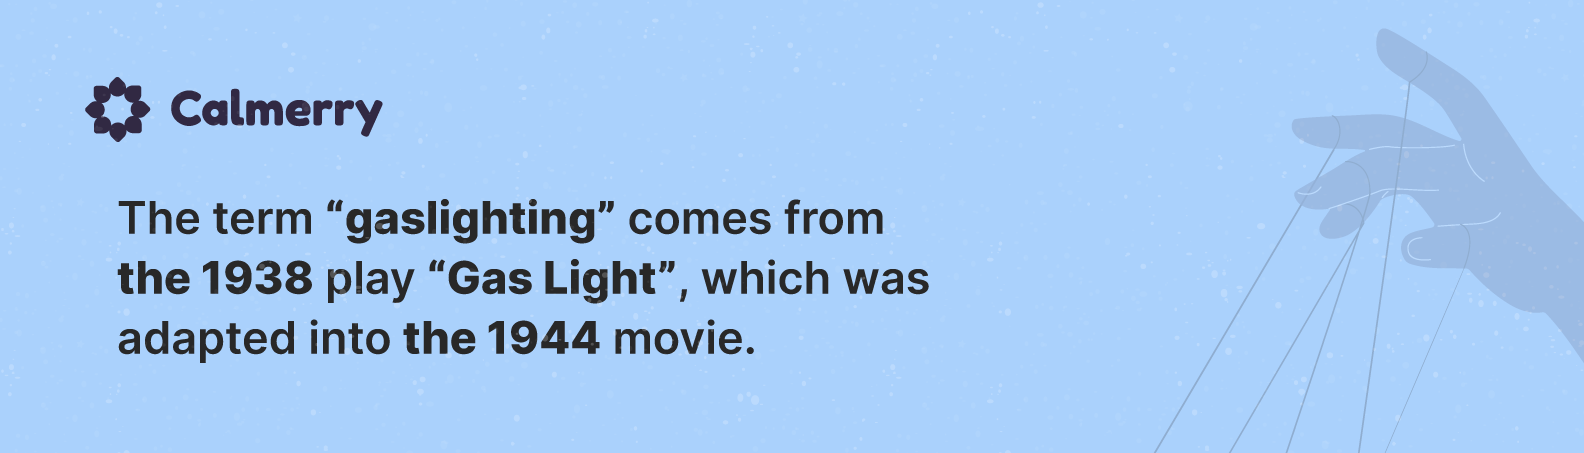 gaslighting term movie